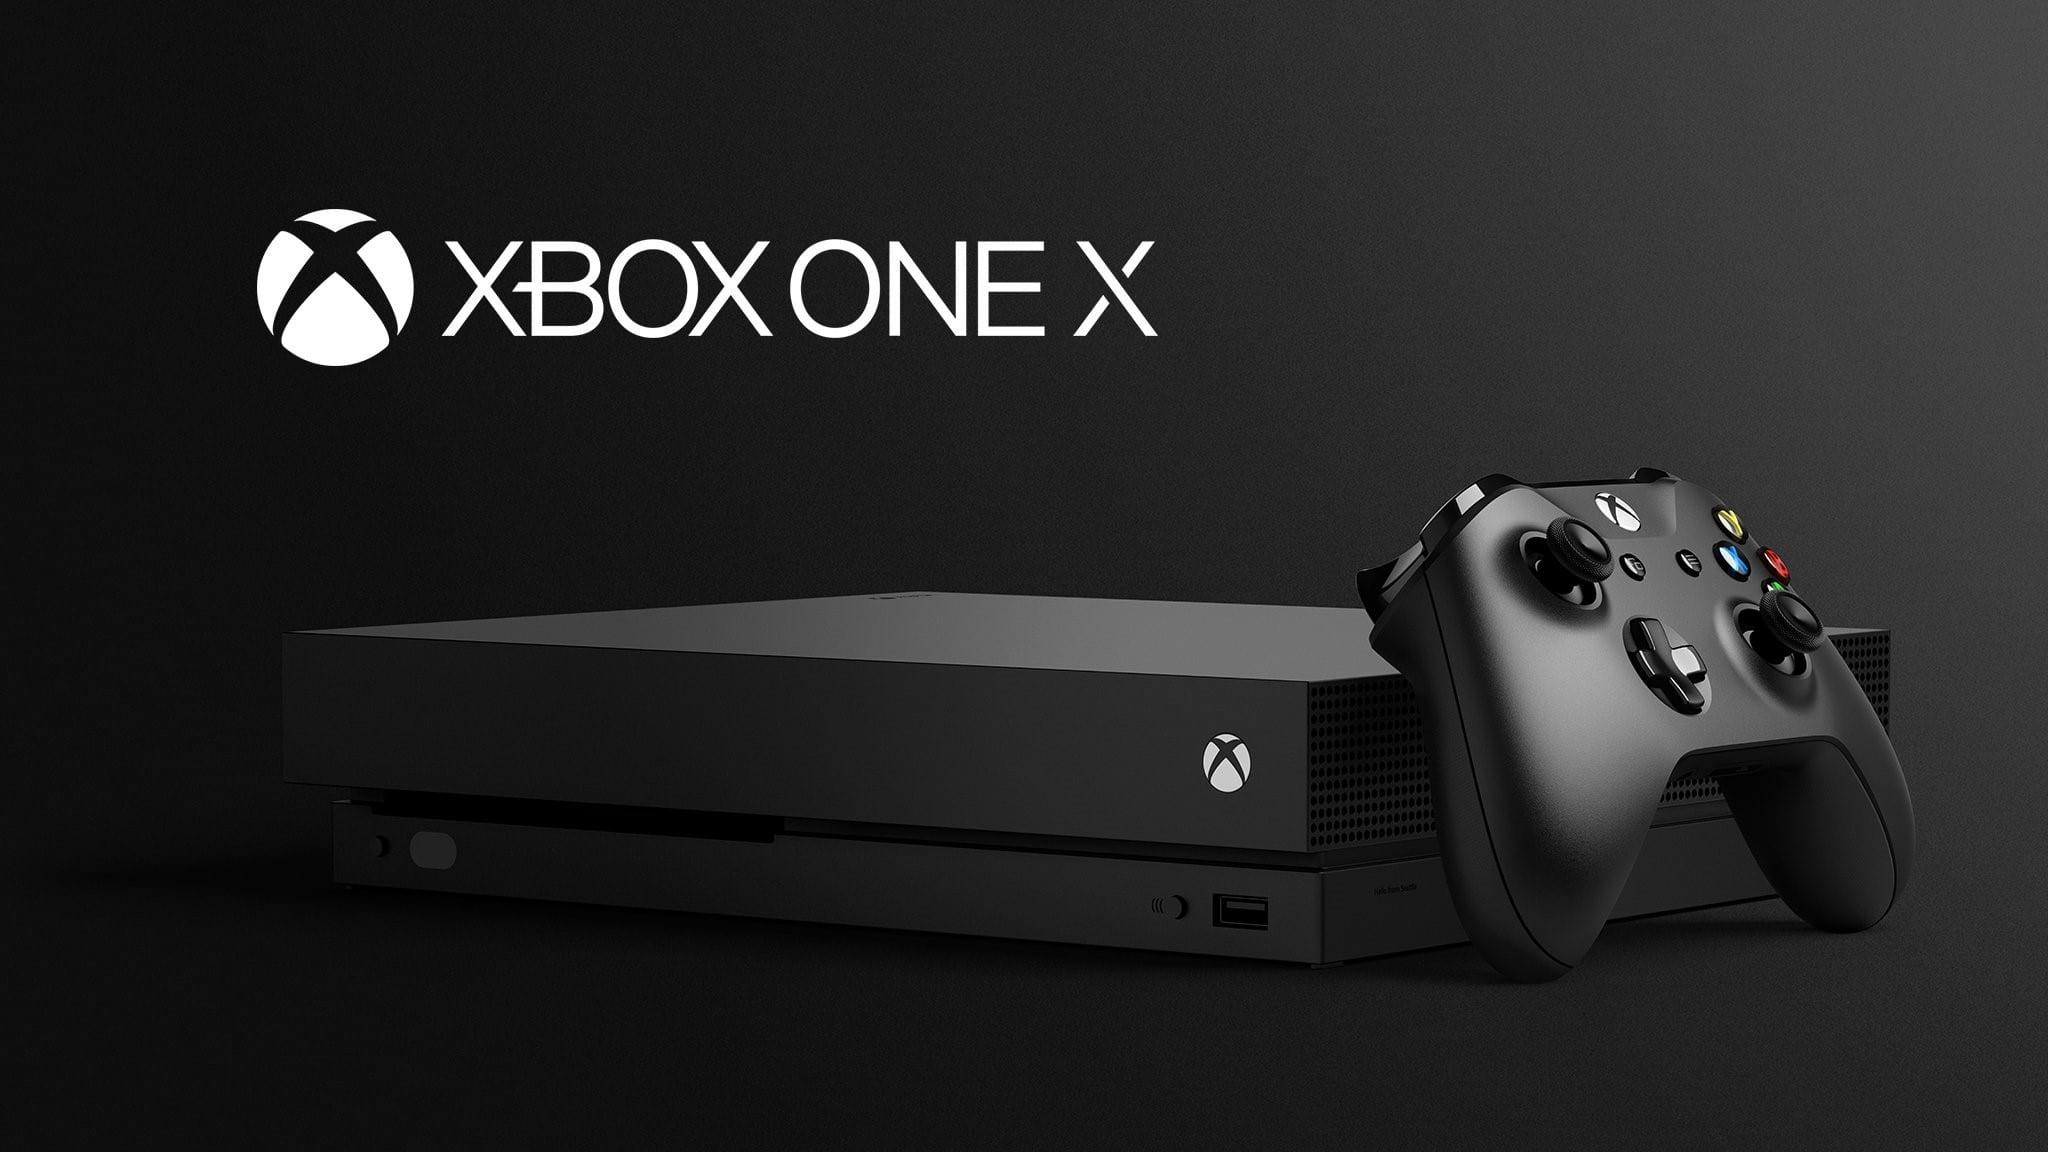 Microsoft’s Xbox One X